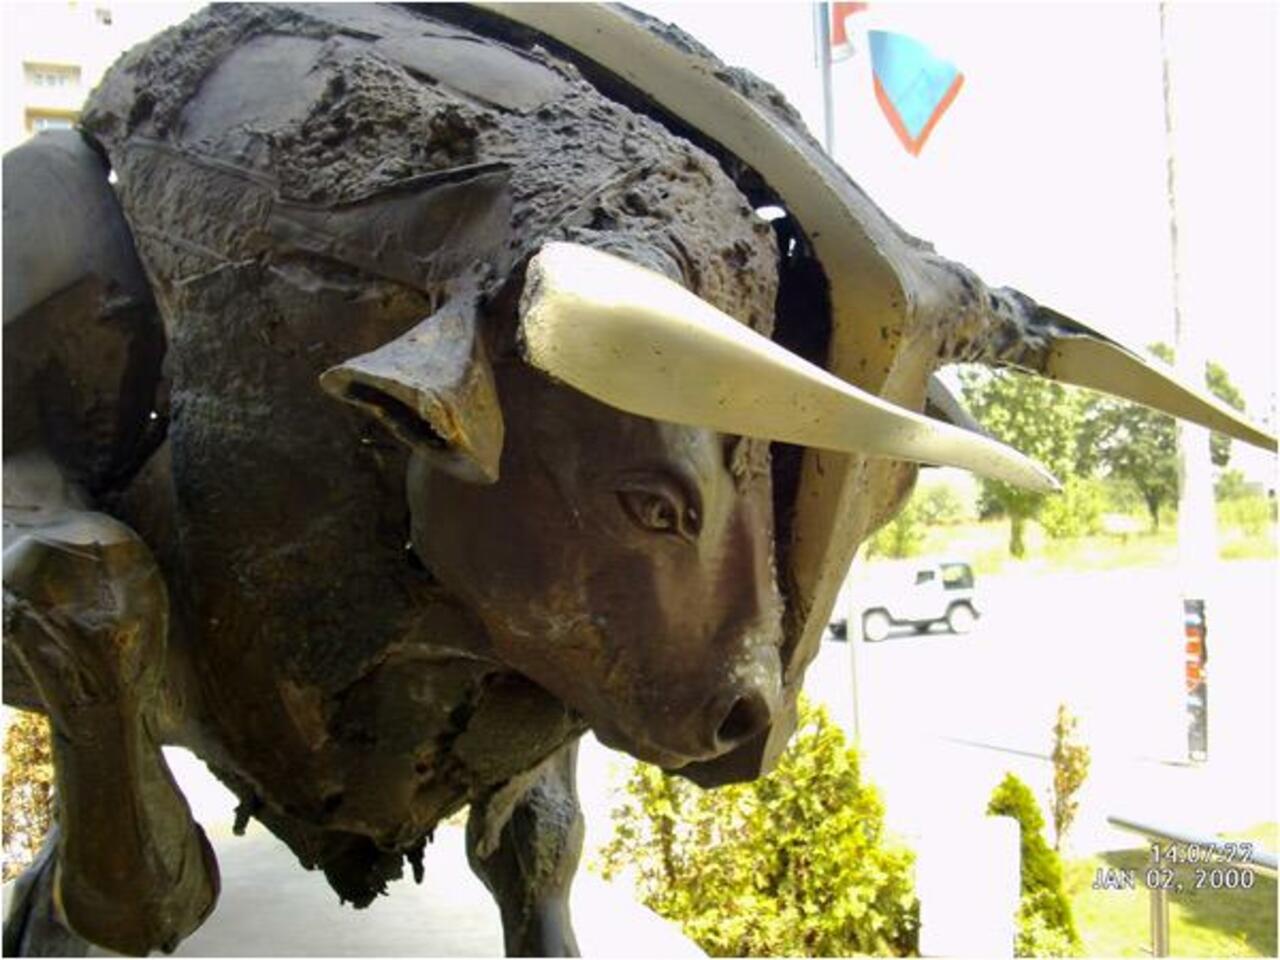 Big Bull.

Huge bull sculpture by #NikolaKolev

#ArtWithoutBorders 
#TAFE
#Art http://t.co/awJjZUgDH8